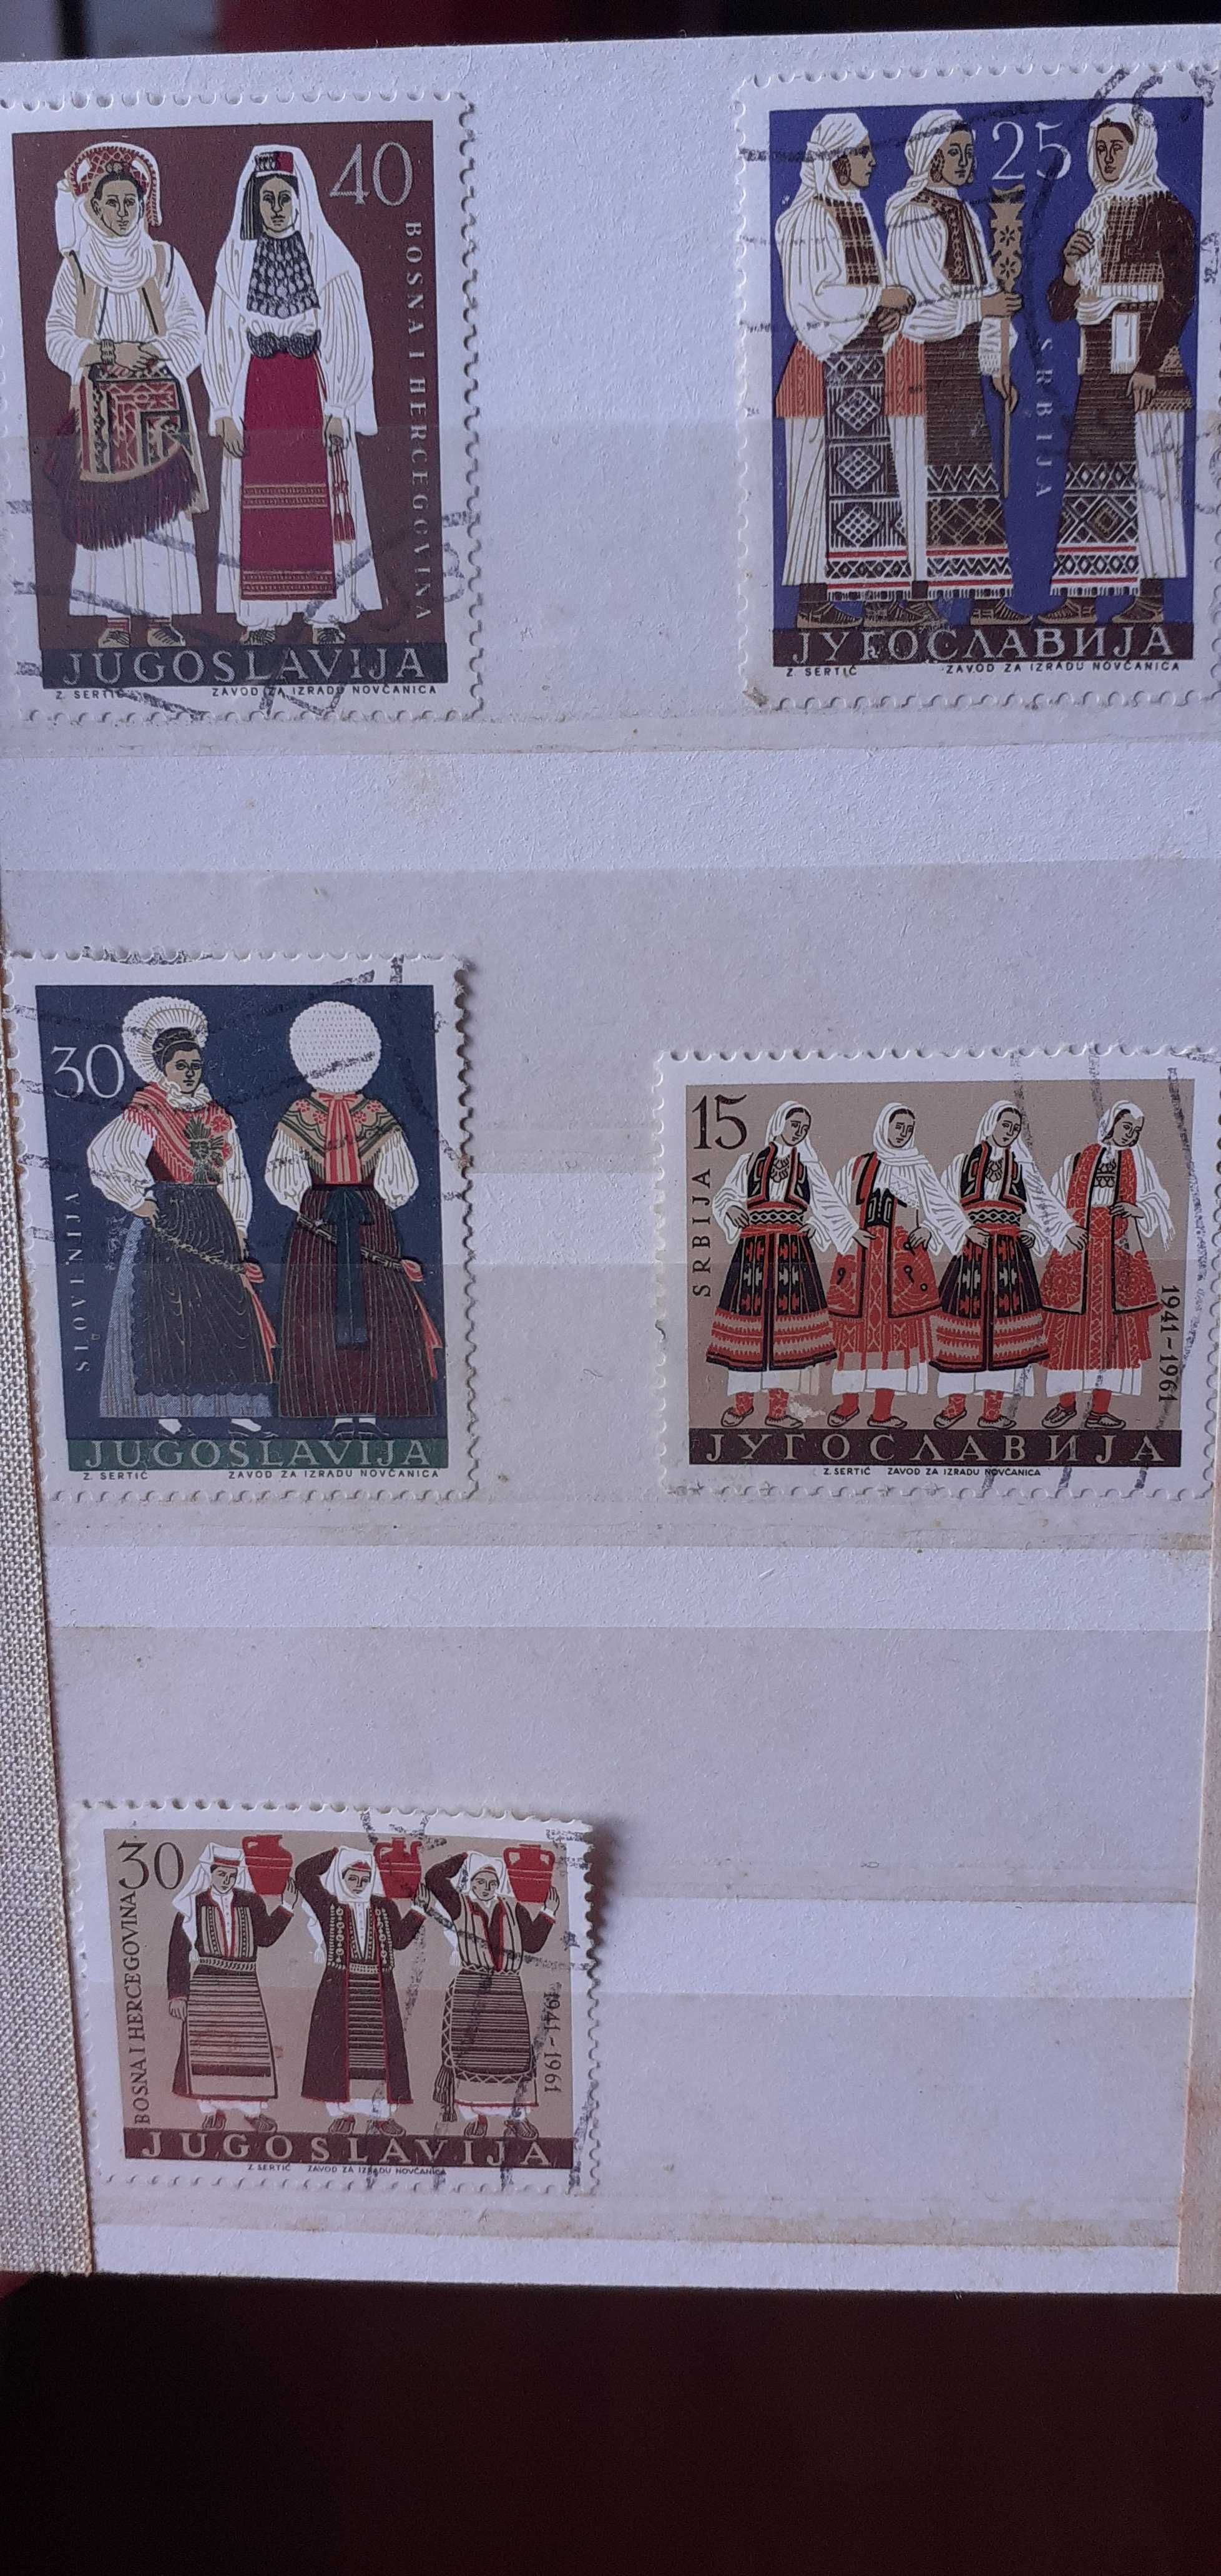 Vand album timbre de colectie romanesti si straine livrare gratuita